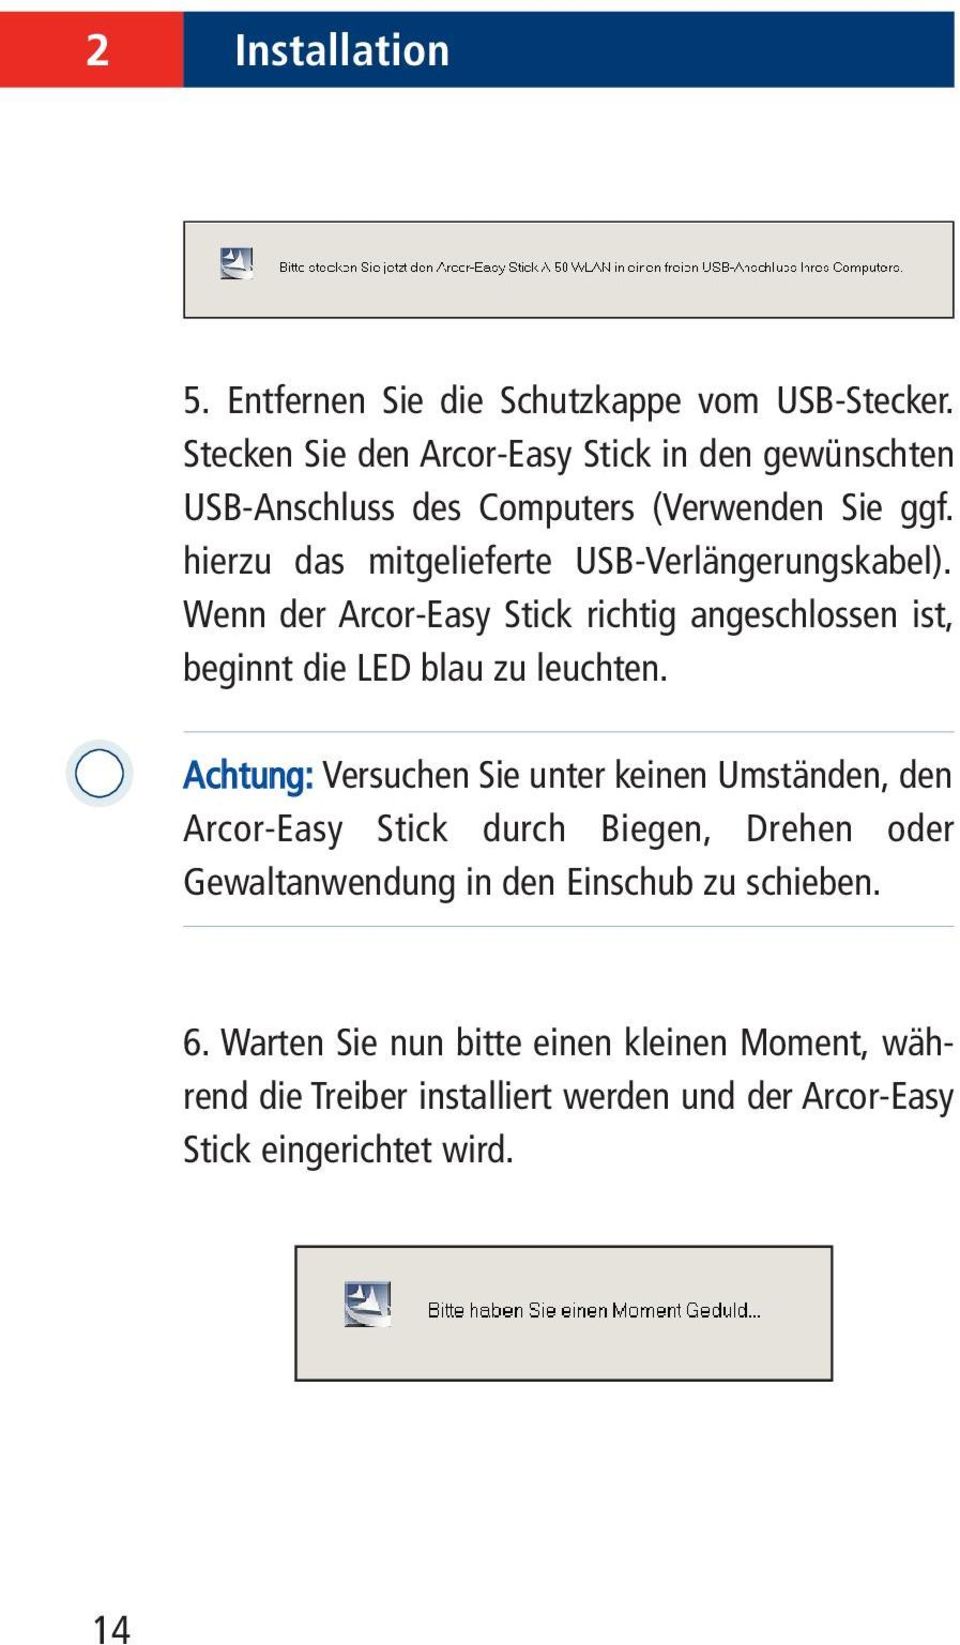 hierzu das mitgelieferte USB-Verlängerungskabel). Wenn der Arcor-Easy Stick richtig angeschlossen ist, beginnt die LED blau zu leuchten.